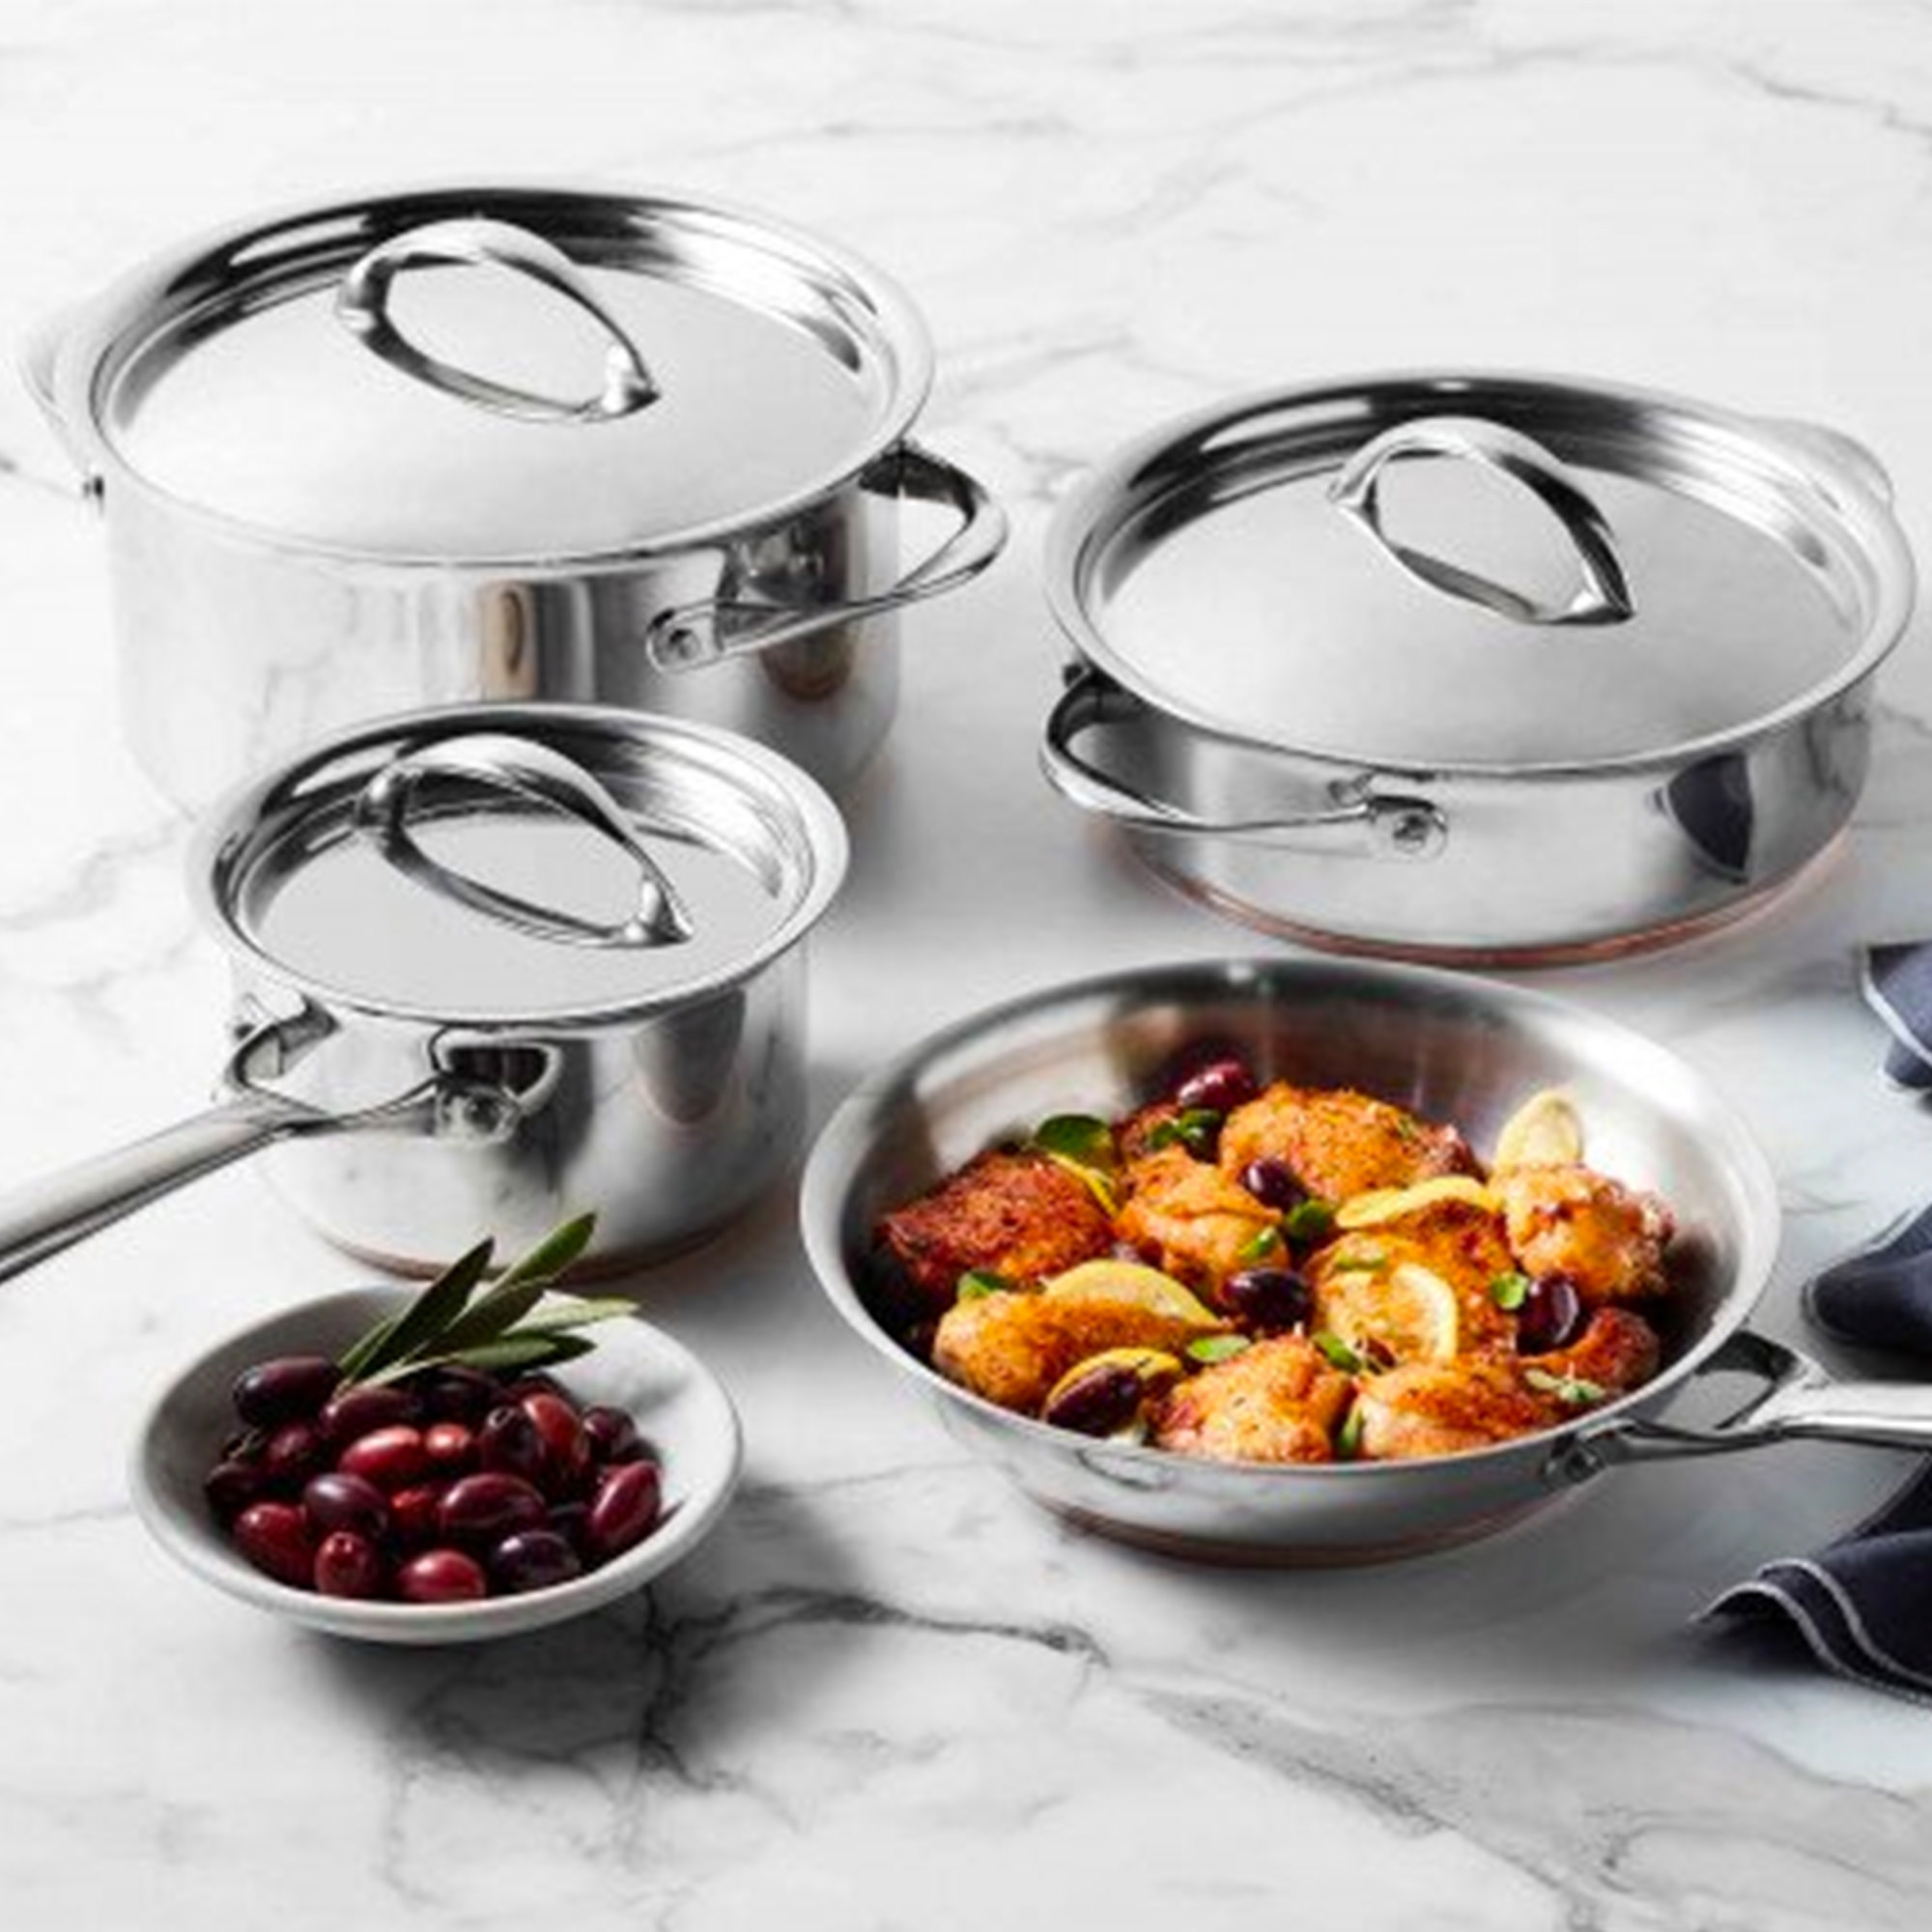 Essteele Per Vita 4pc Stainless Steel Cookware Set Image 2